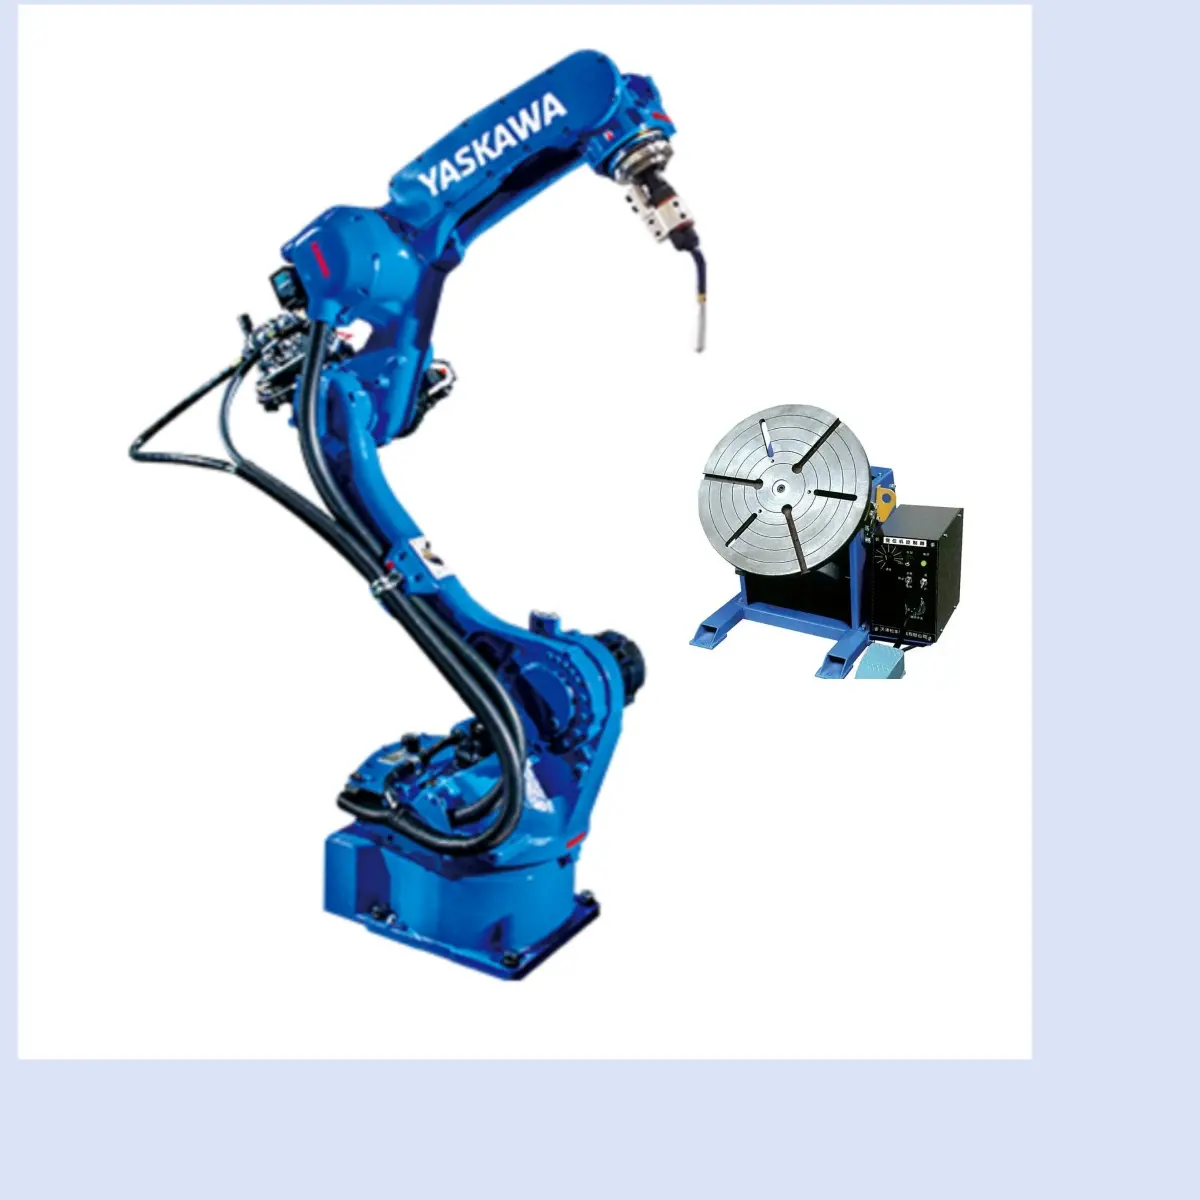 Mig kaynak robotu endüstriyel YASKAWA AR700 KAYNAK MAKINESİ CNGBS pozisyoner ile 6 eksen kol ark